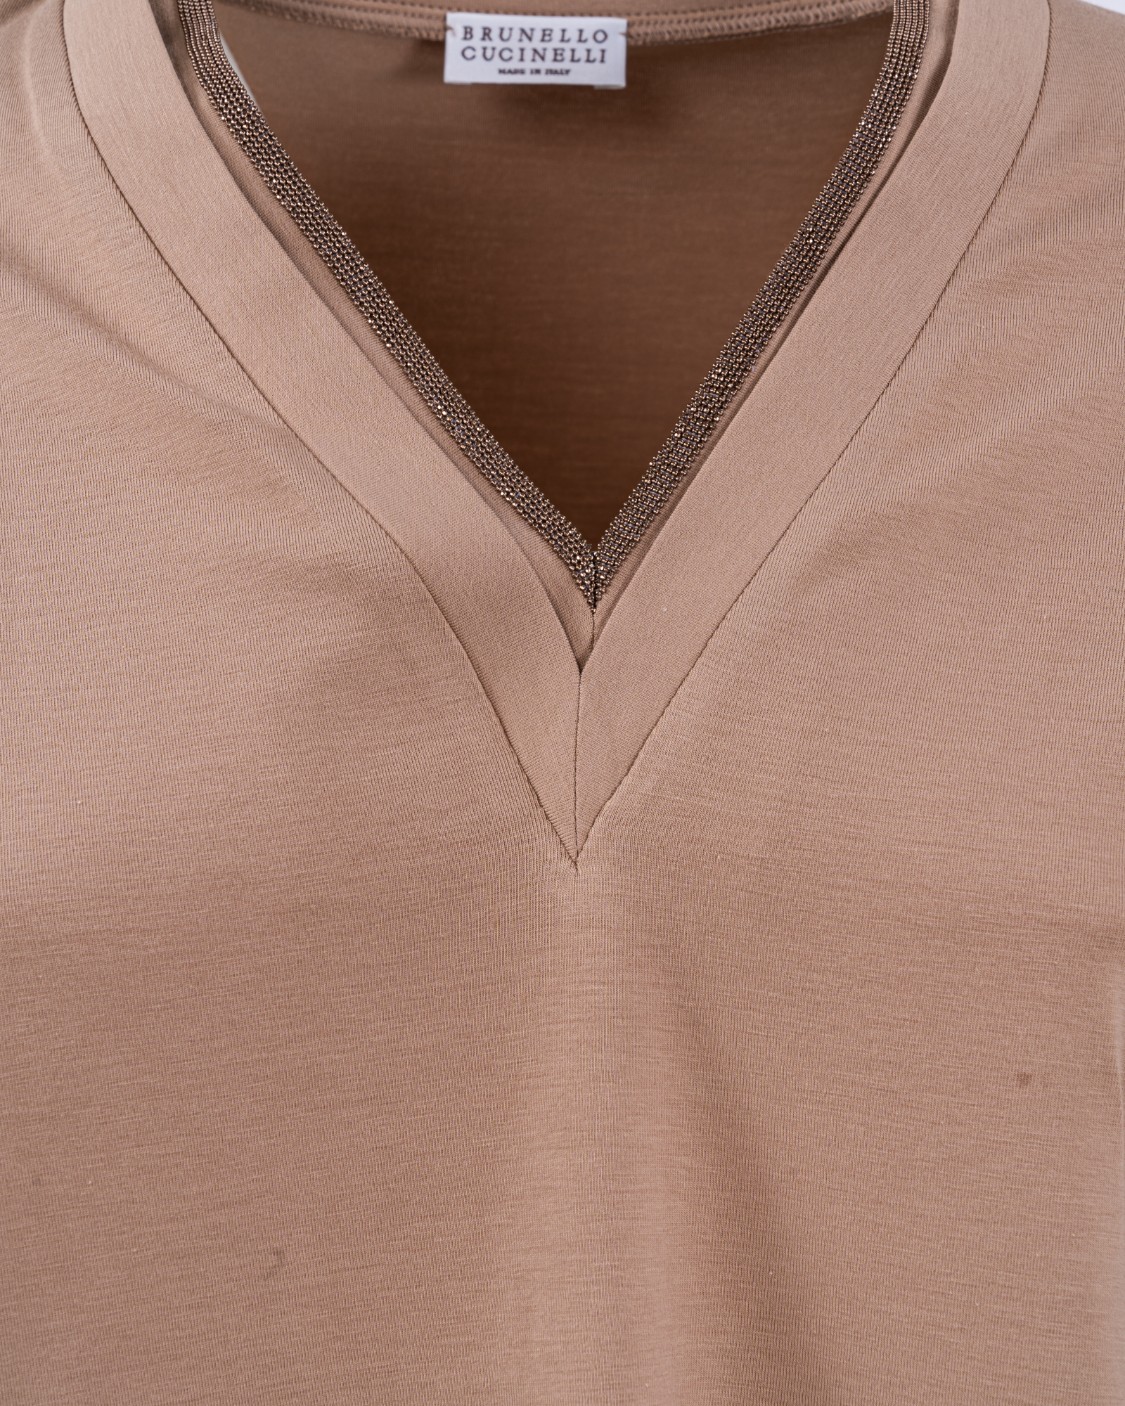 shop BRUNELLO CUCINELLI  T-shirt: Brunello Cucinelli T-shirt in jersey di cotone stretch con "Precious Neckline".
Scollo V con decorazione in monile.
Maniche corte.
Fondo con orlo ribattuto.
Composizione: 93% cotone 7% elastan.
Made in Italy.. M0T18BD222-C8642 number 8385290